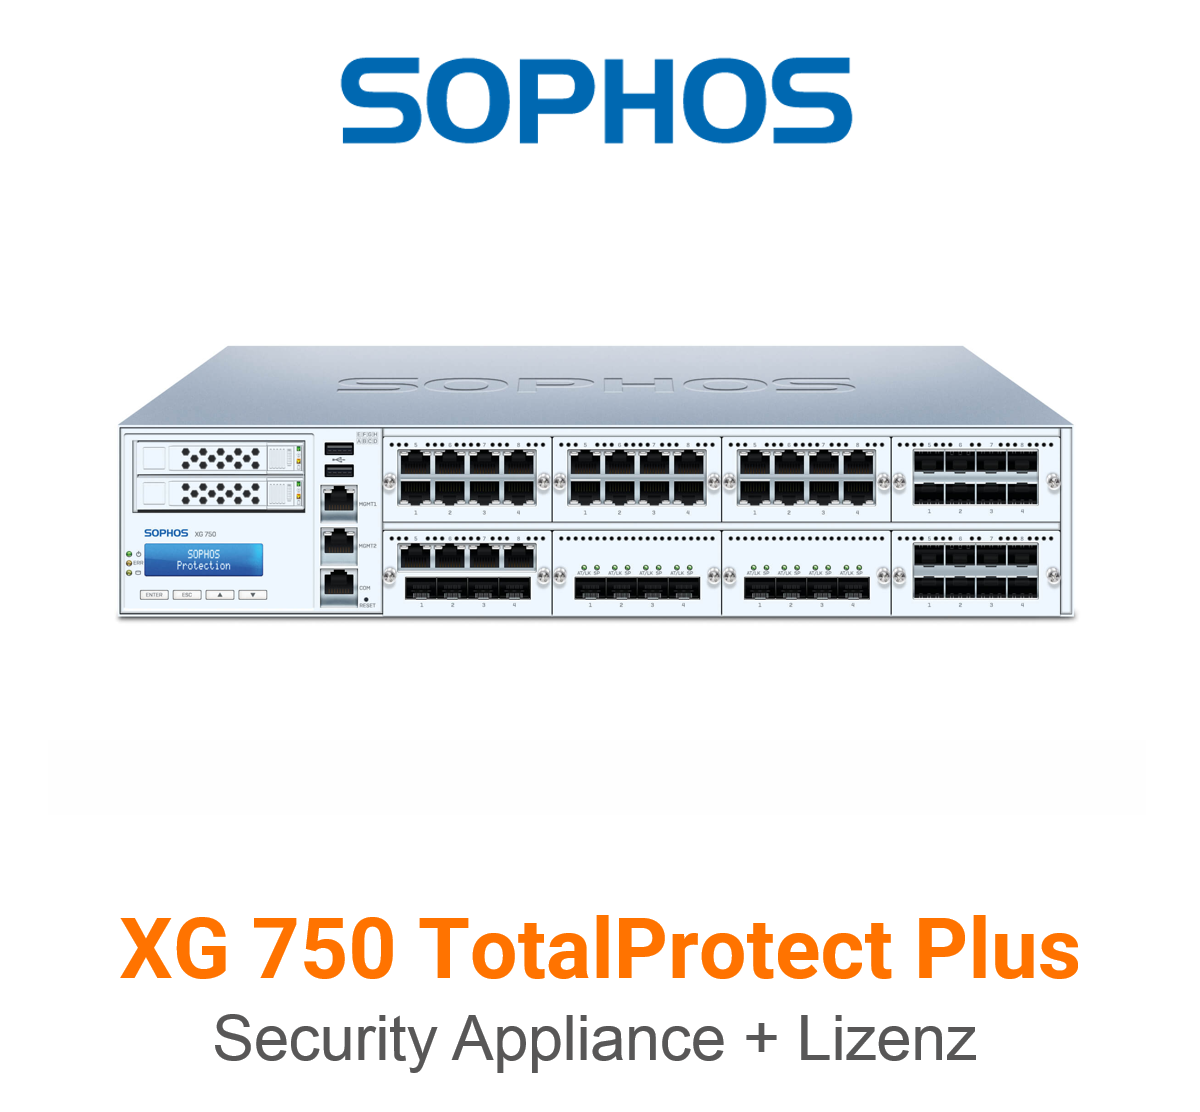 Sophos XG 750 TotalProtect Plus Bundle (Hardware + Lizenz) (End of Sale/Life)